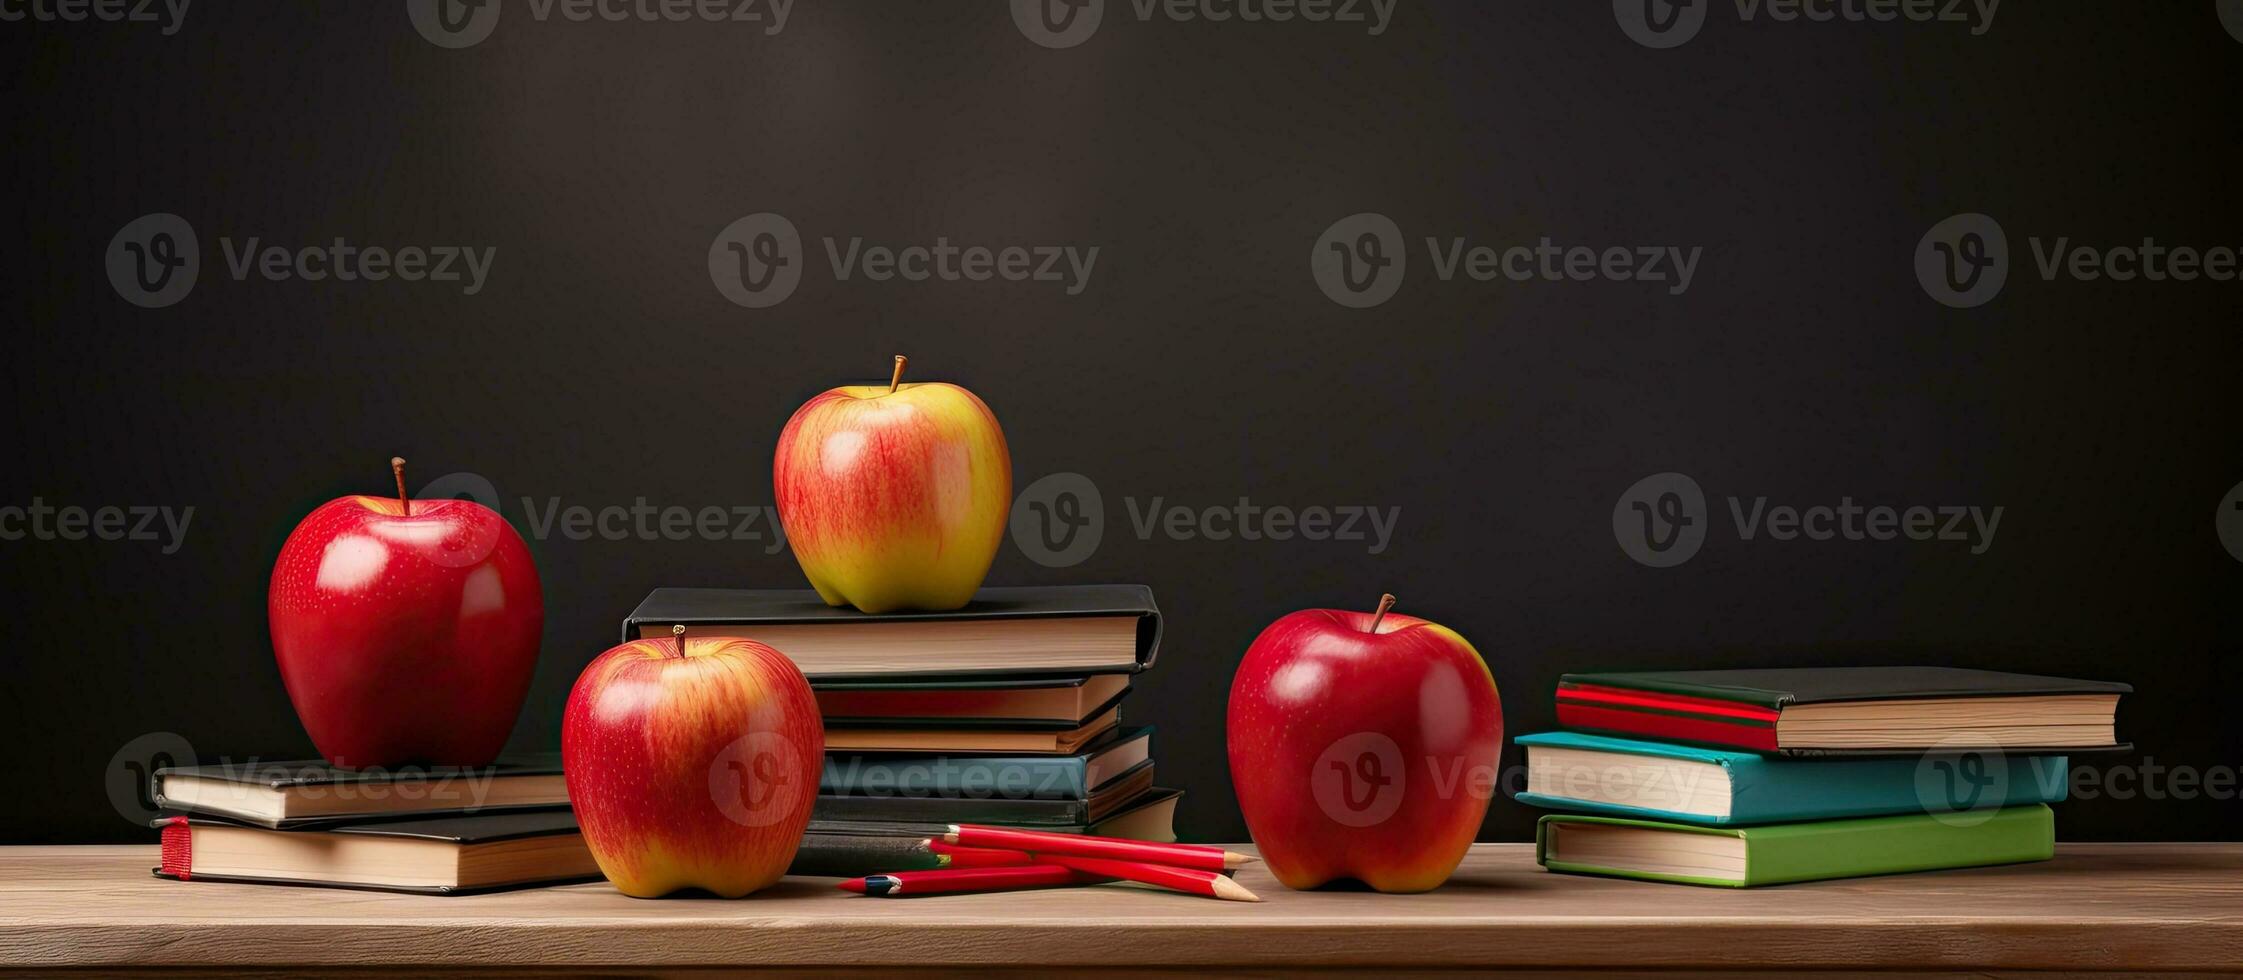 terug naar school- benodigdheden met appel en leeg schoolbord foto